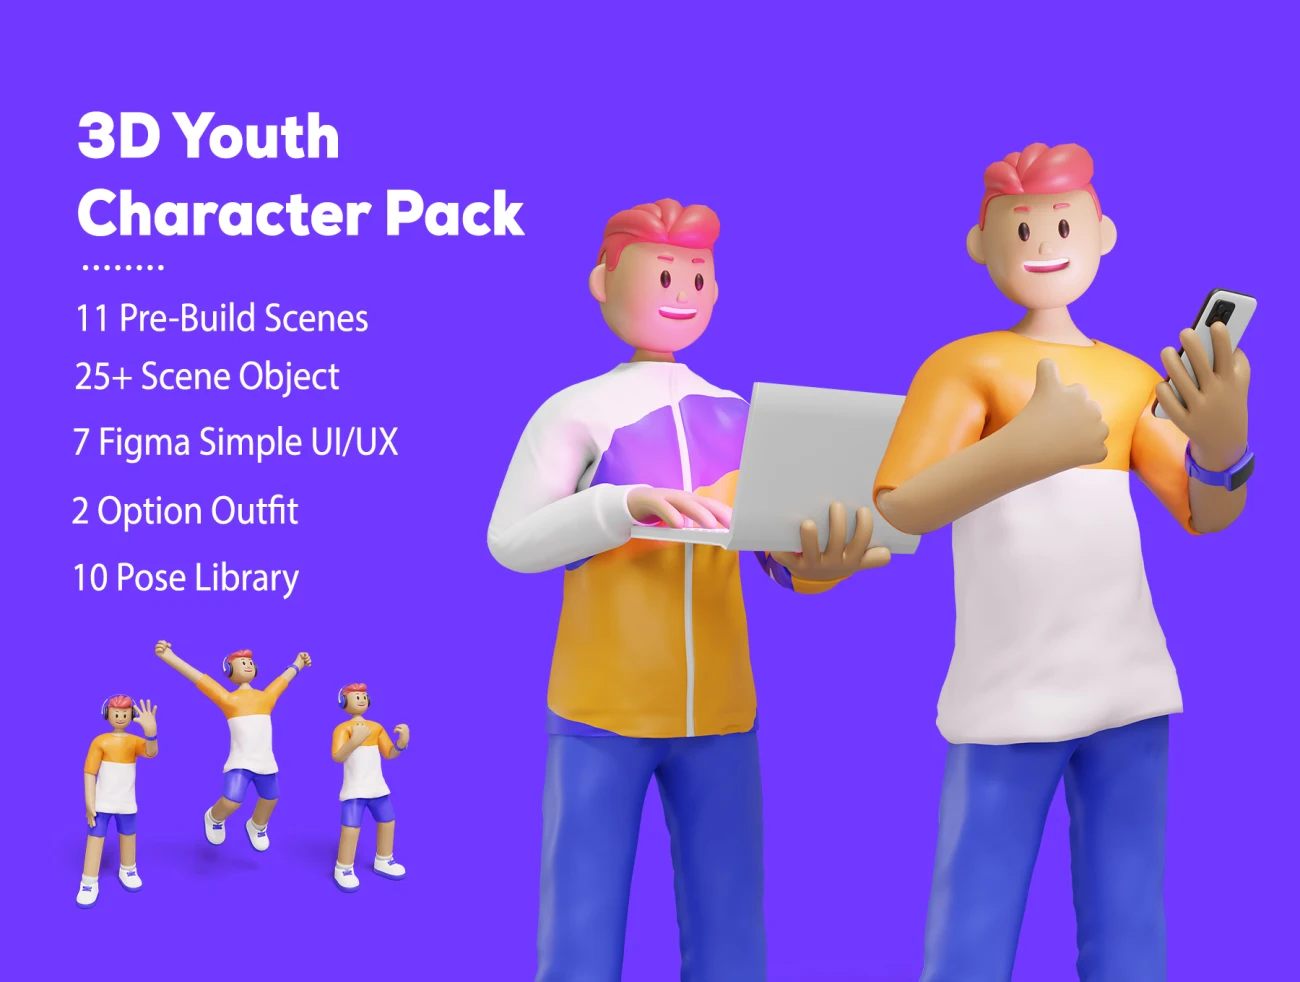 14个青年角色娱乐生活相关3D图标插图包 3D Web Illustration – Youth Character Pack插图1